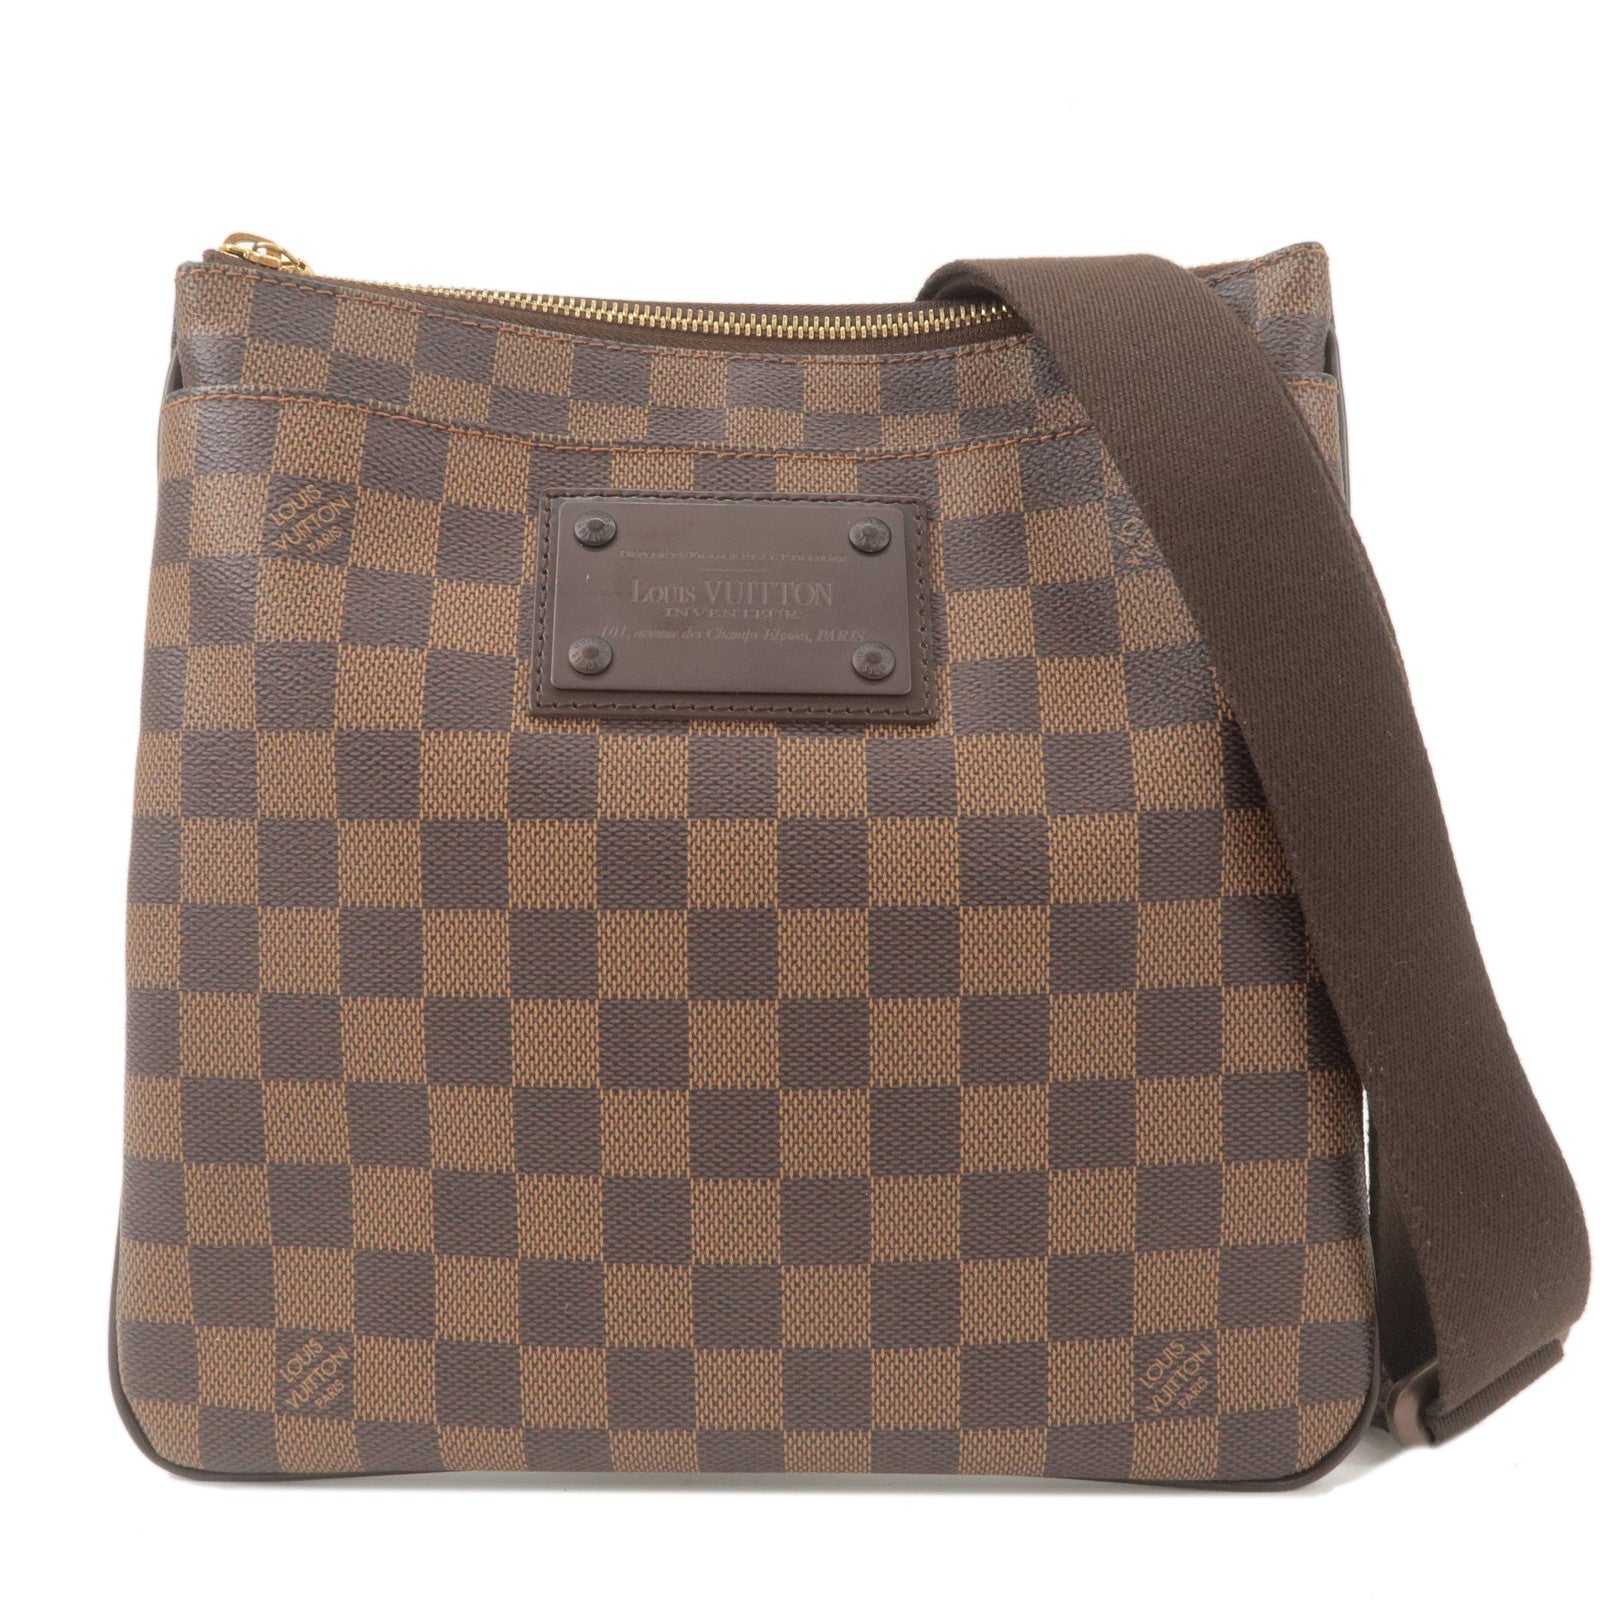 Louis Vuitton, Bags, Louis Vuitton Inventeur Vintage Bag